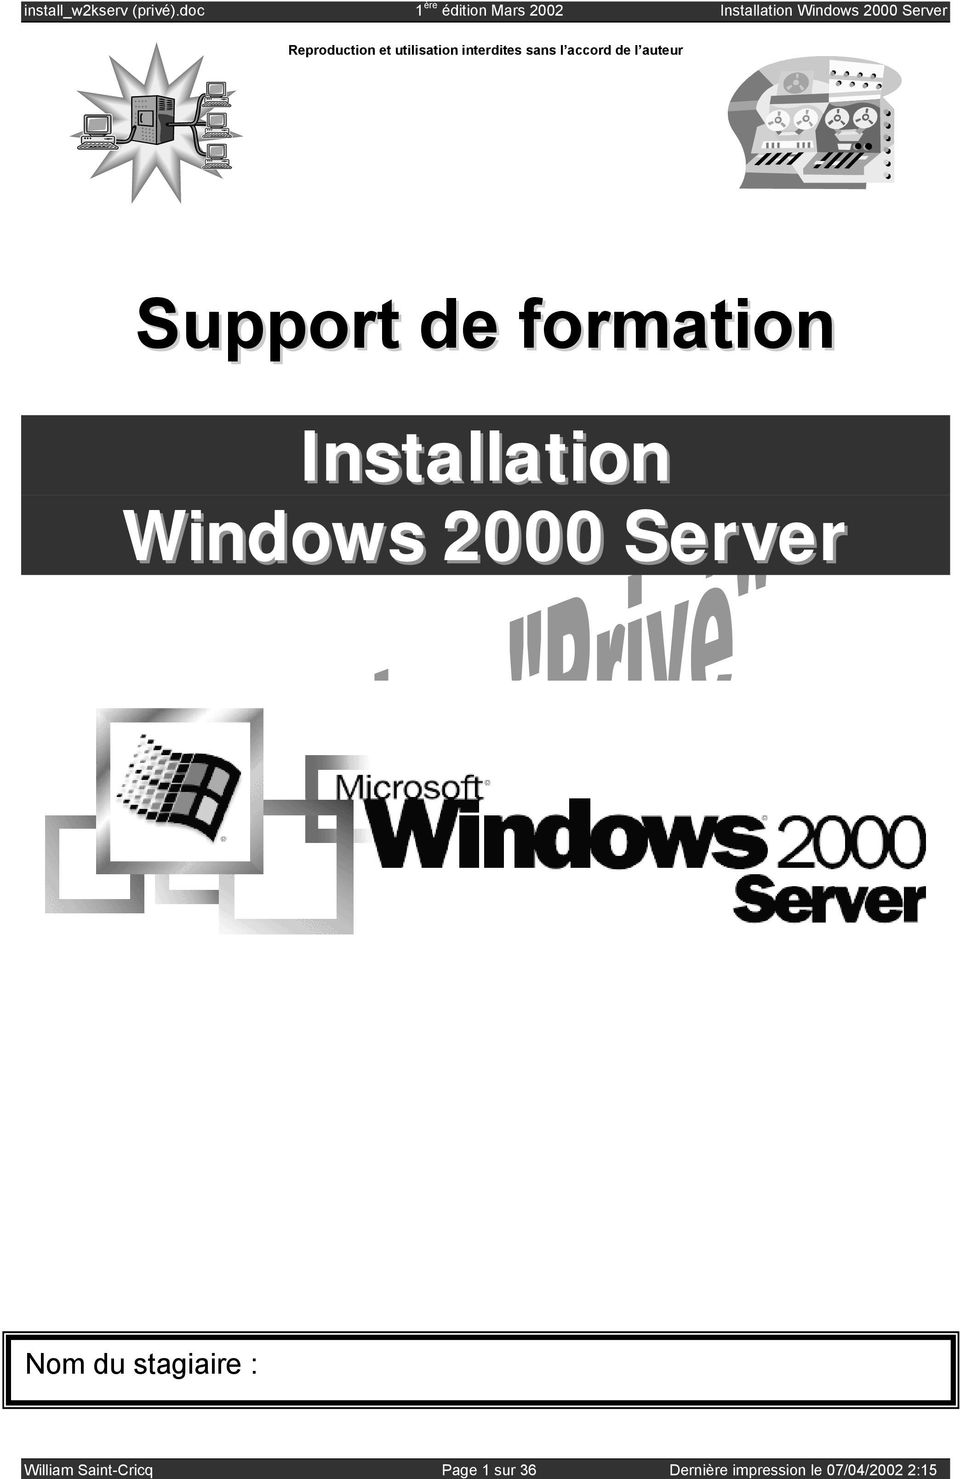 Windows 2000 Server Nom du stagiaire : William